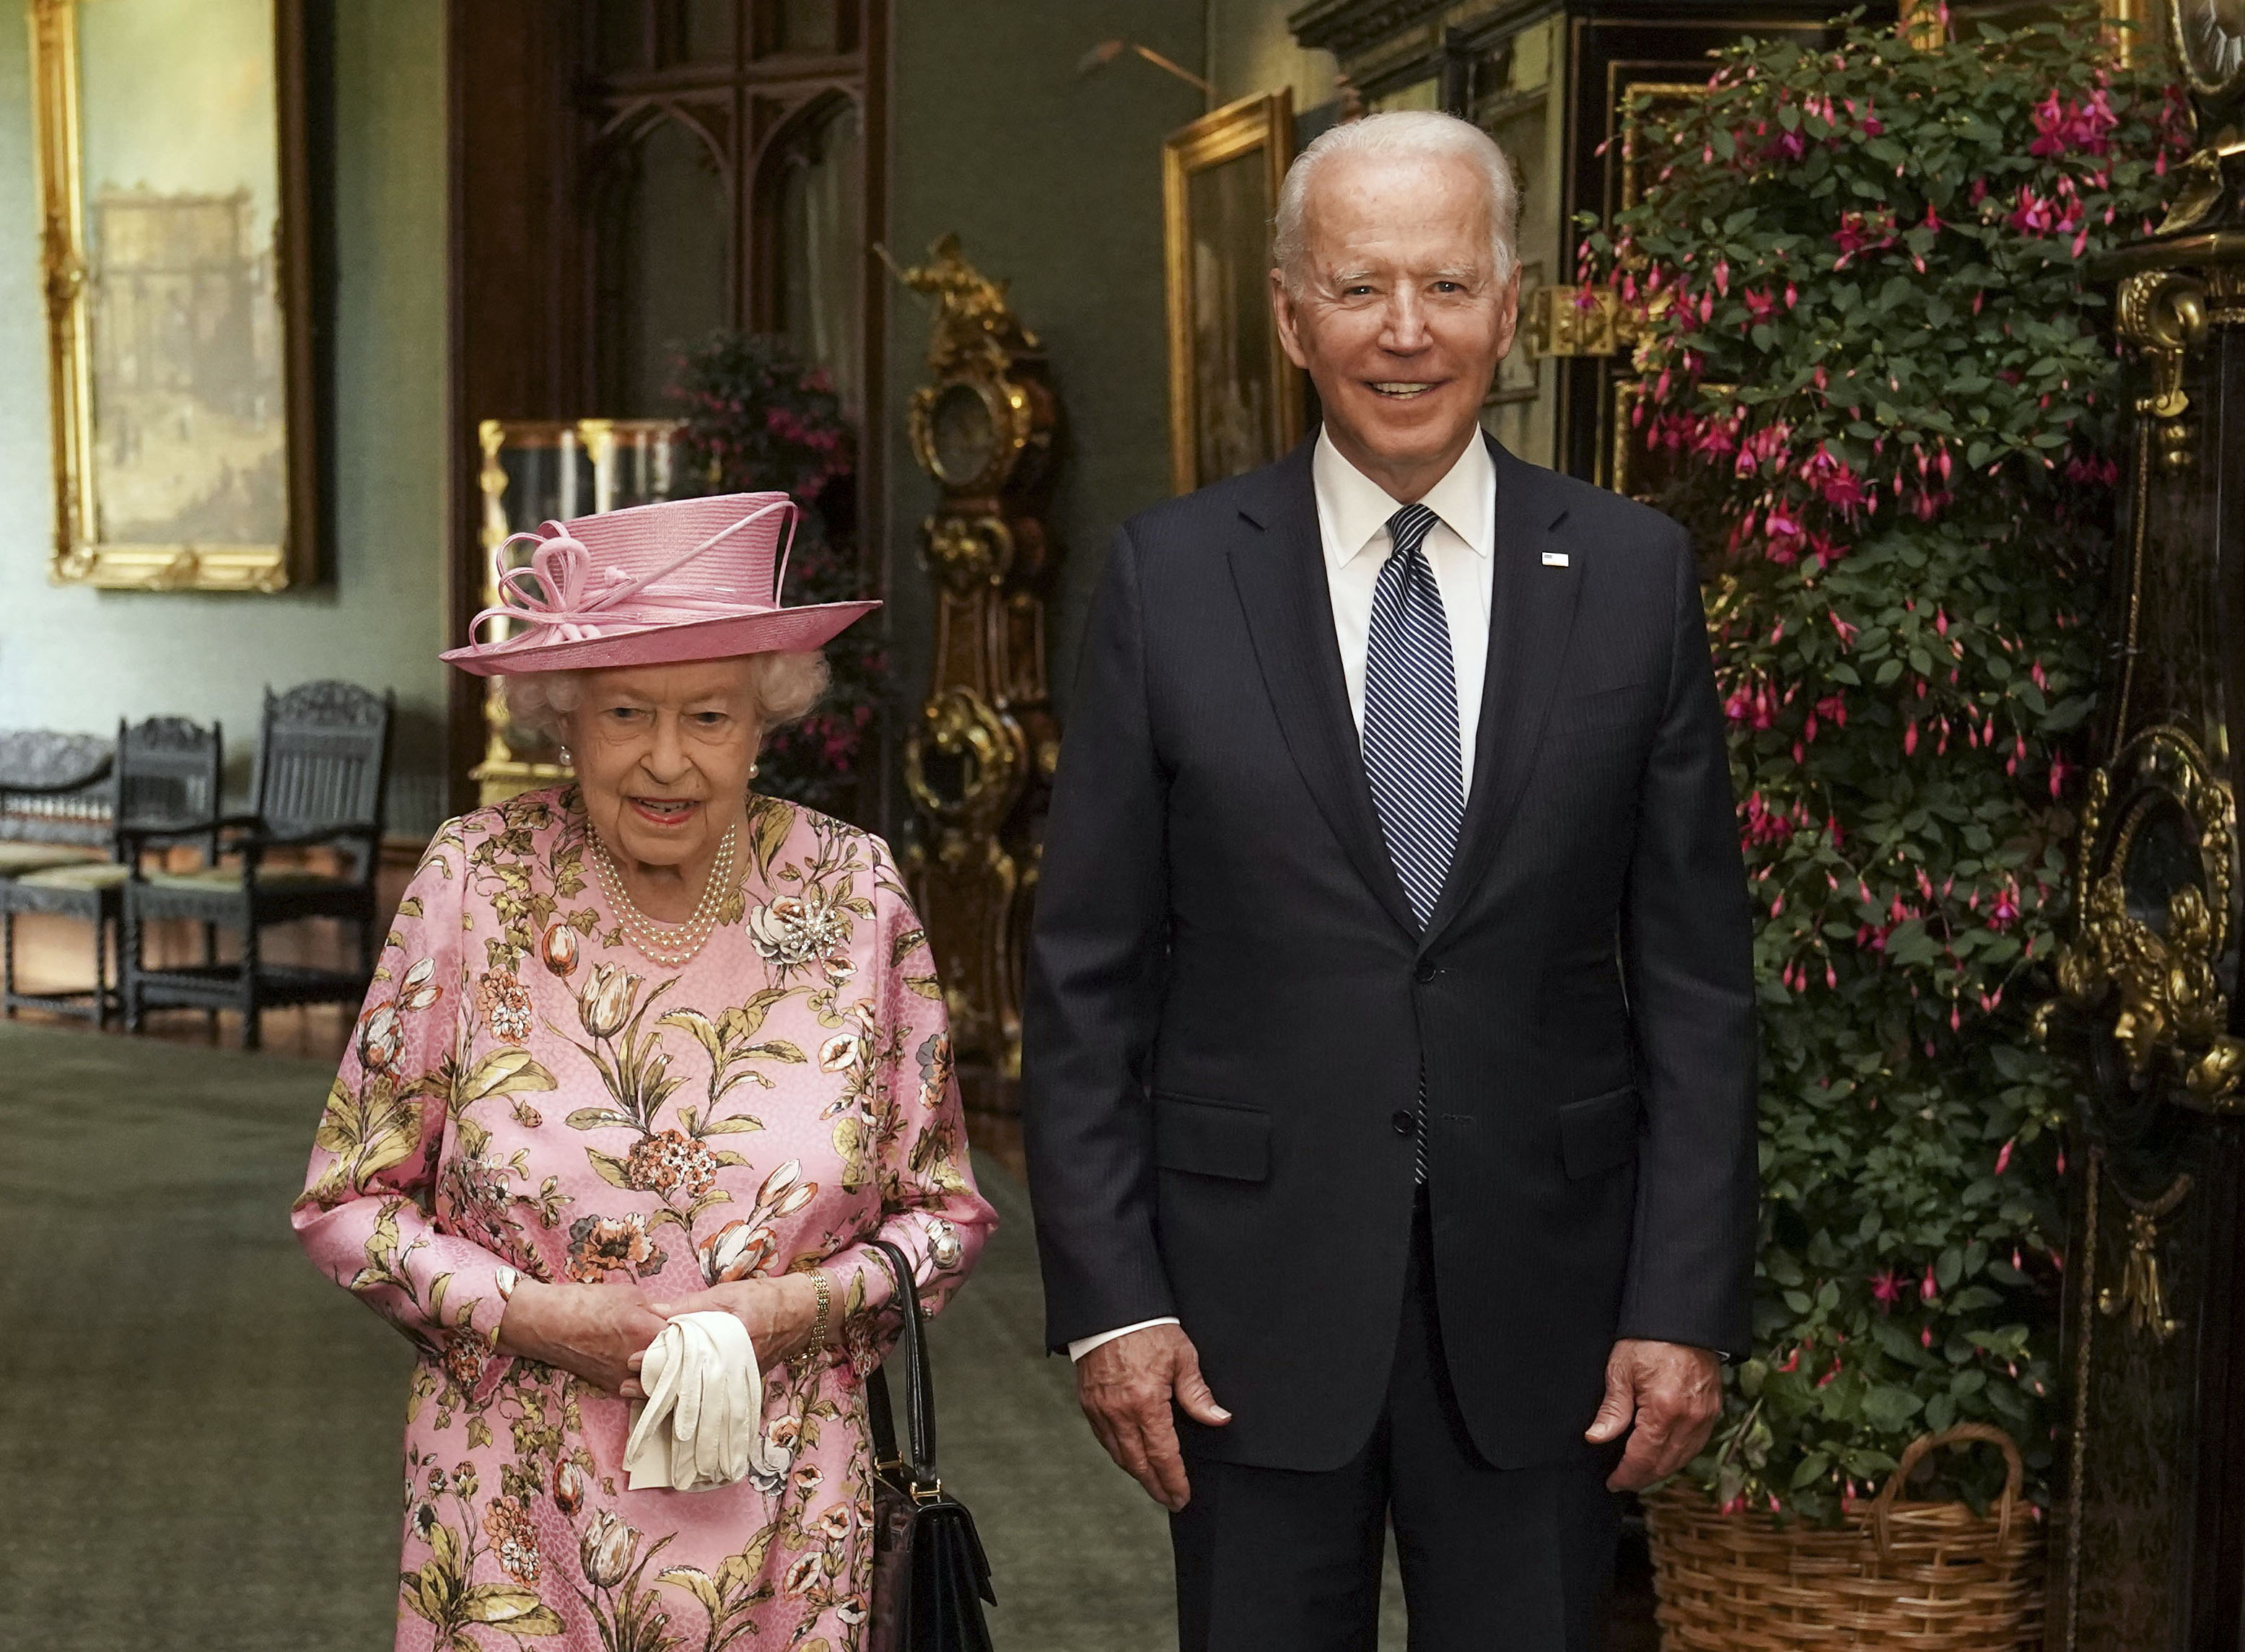 Queen Elizabeth II with U.S. President Joe Biden pose for photo in the Grand Corridor at Windsor Castle